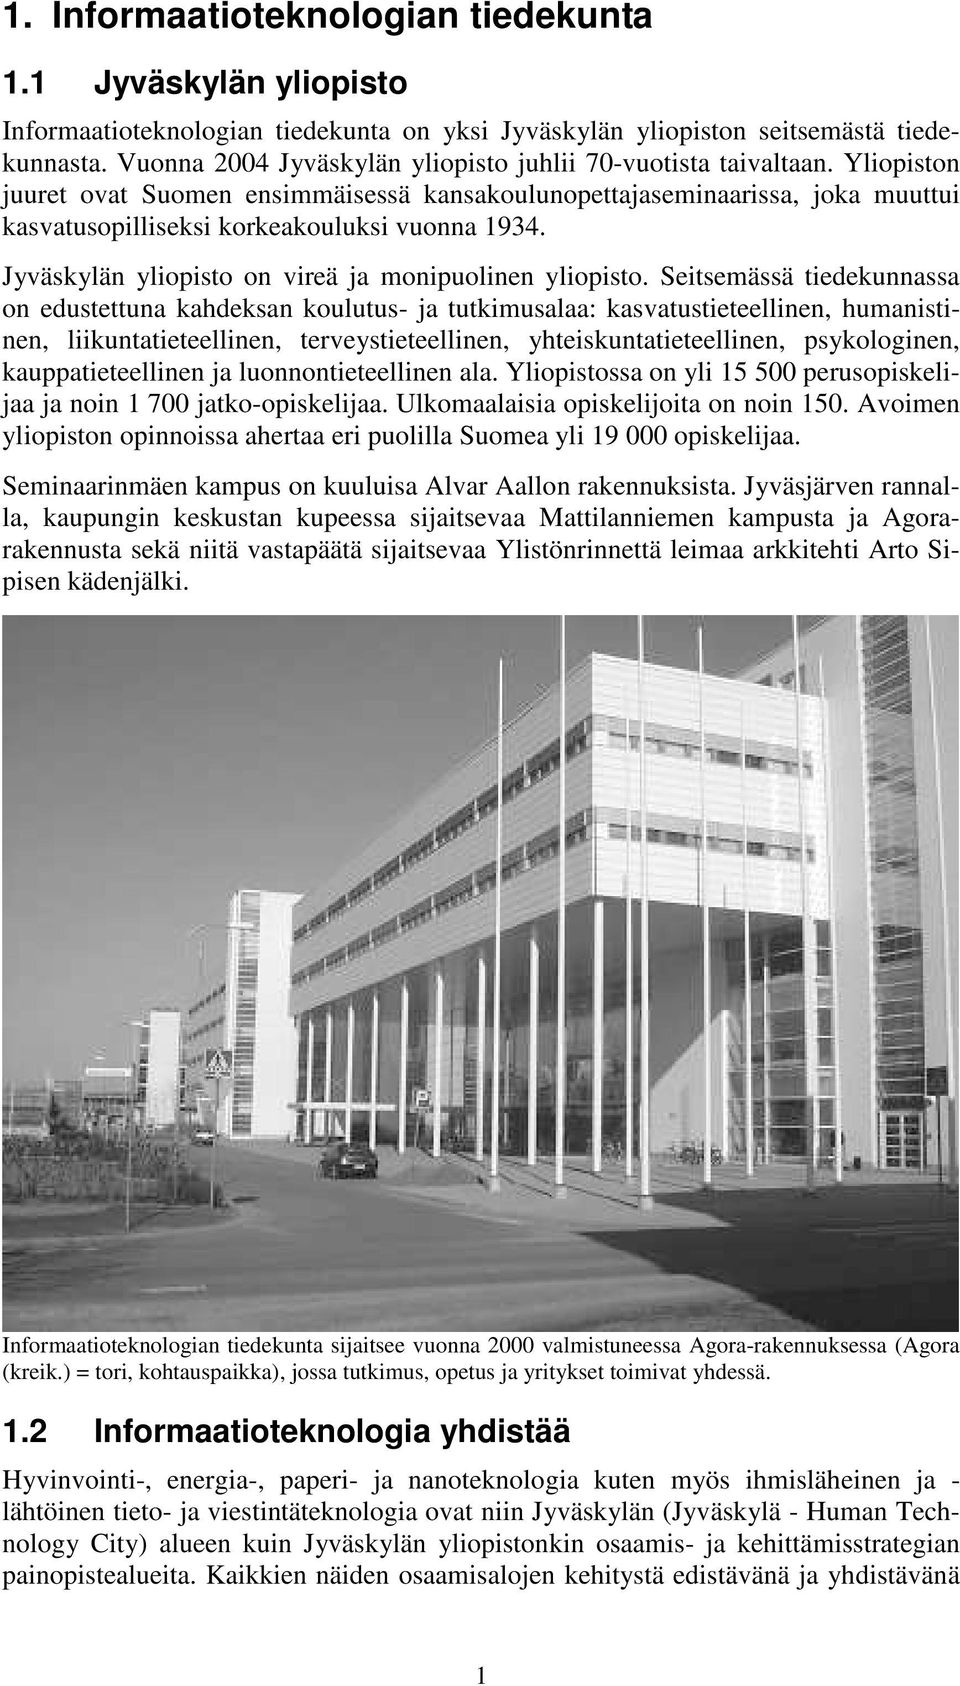 Yliopiston juuret ovat Suomen ensimmäisessä kansakoulunopettajaseminaarissa, joka muuttui kasvatusopilliseksi korkeakouluksi vuonna 1934. Jyväskylän yliopisto on vireä ja monipuolinen yliopisto.